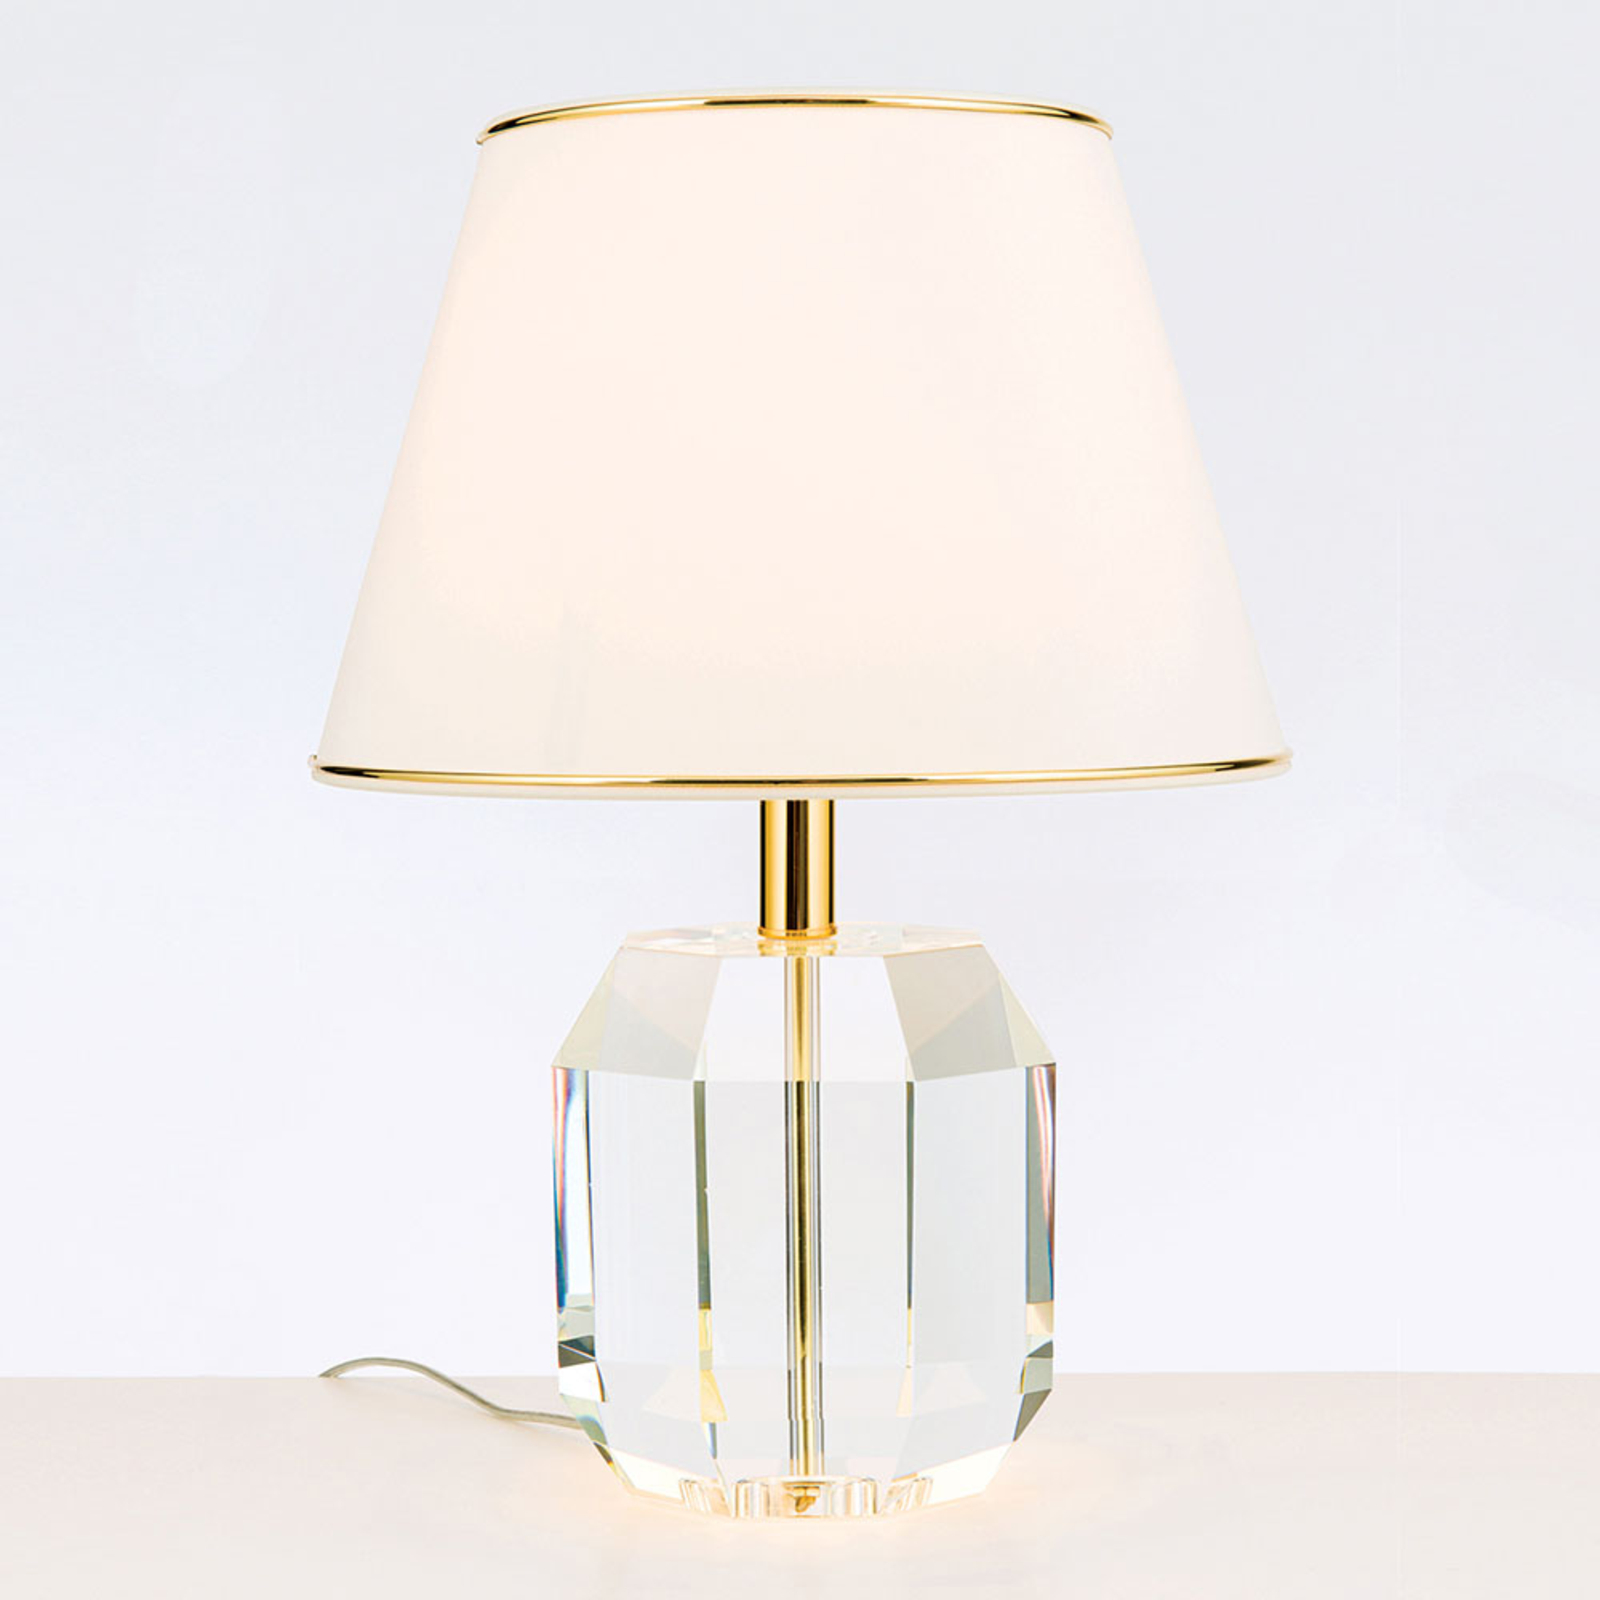 Tafellamp Alexis met kristal goud/crème